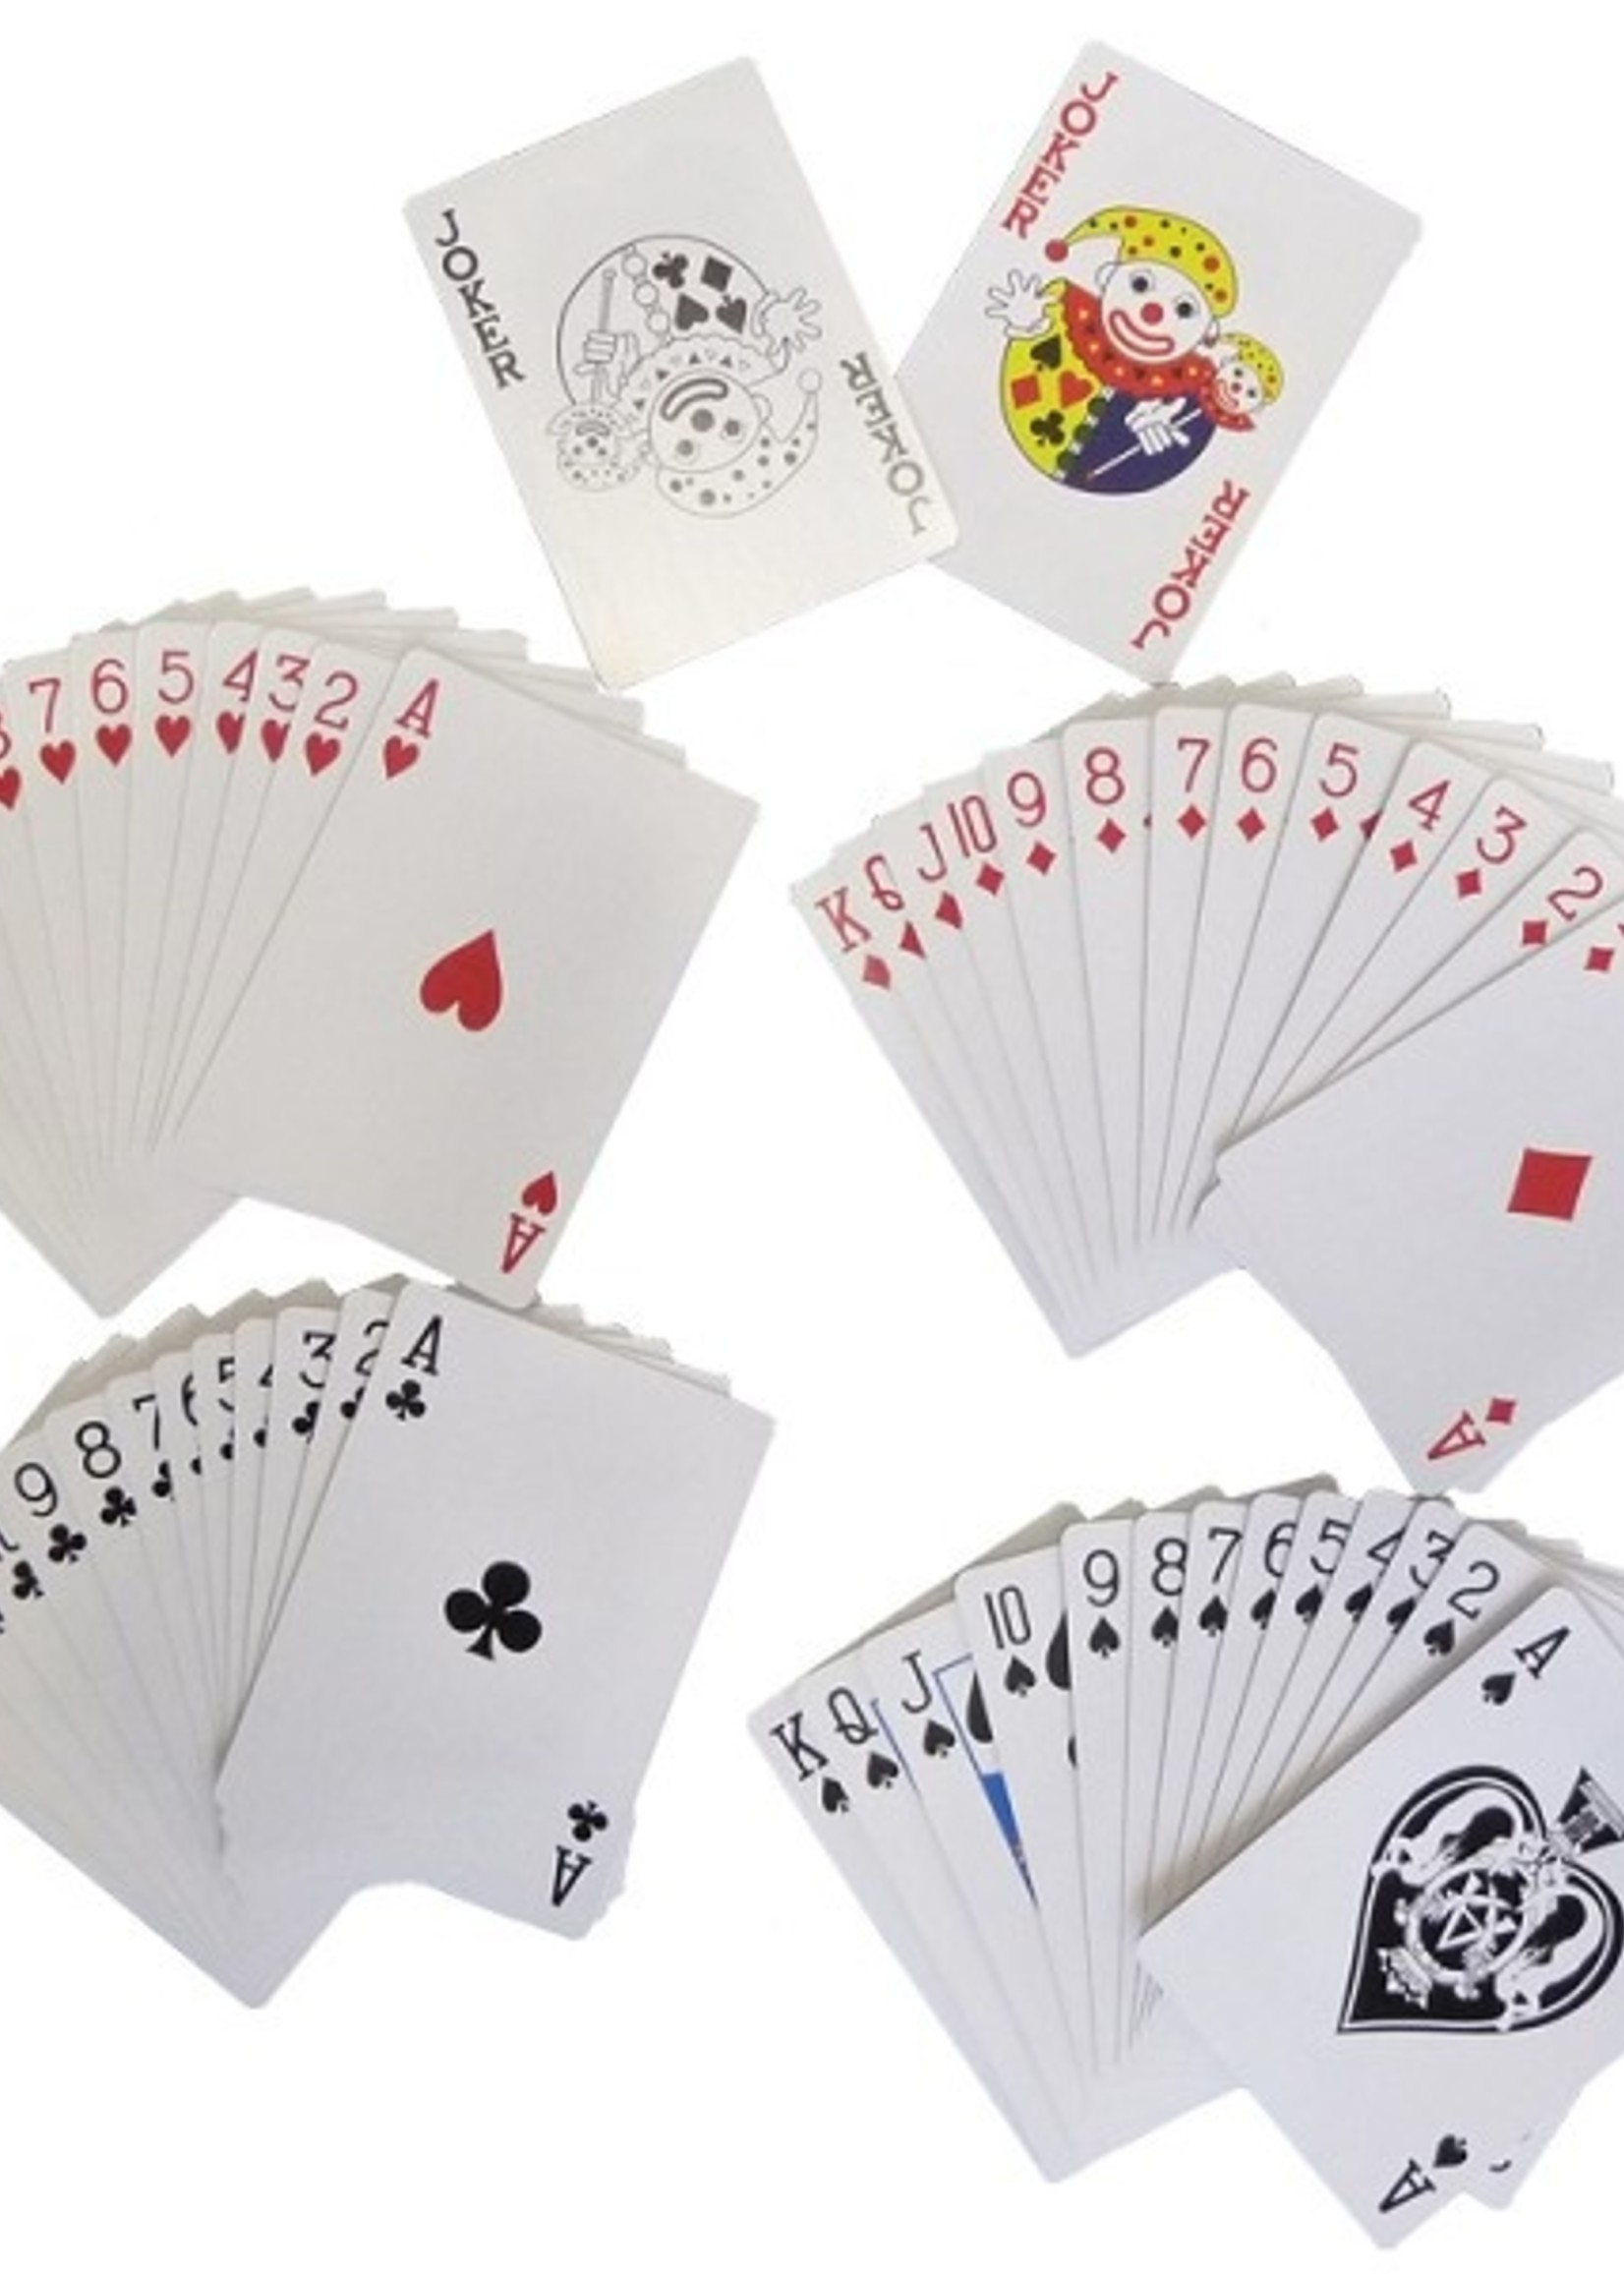 Speelkaarten plastic coated rood of blauw. Pak a 10 pakjes met 52 kaarten en twee jokers.